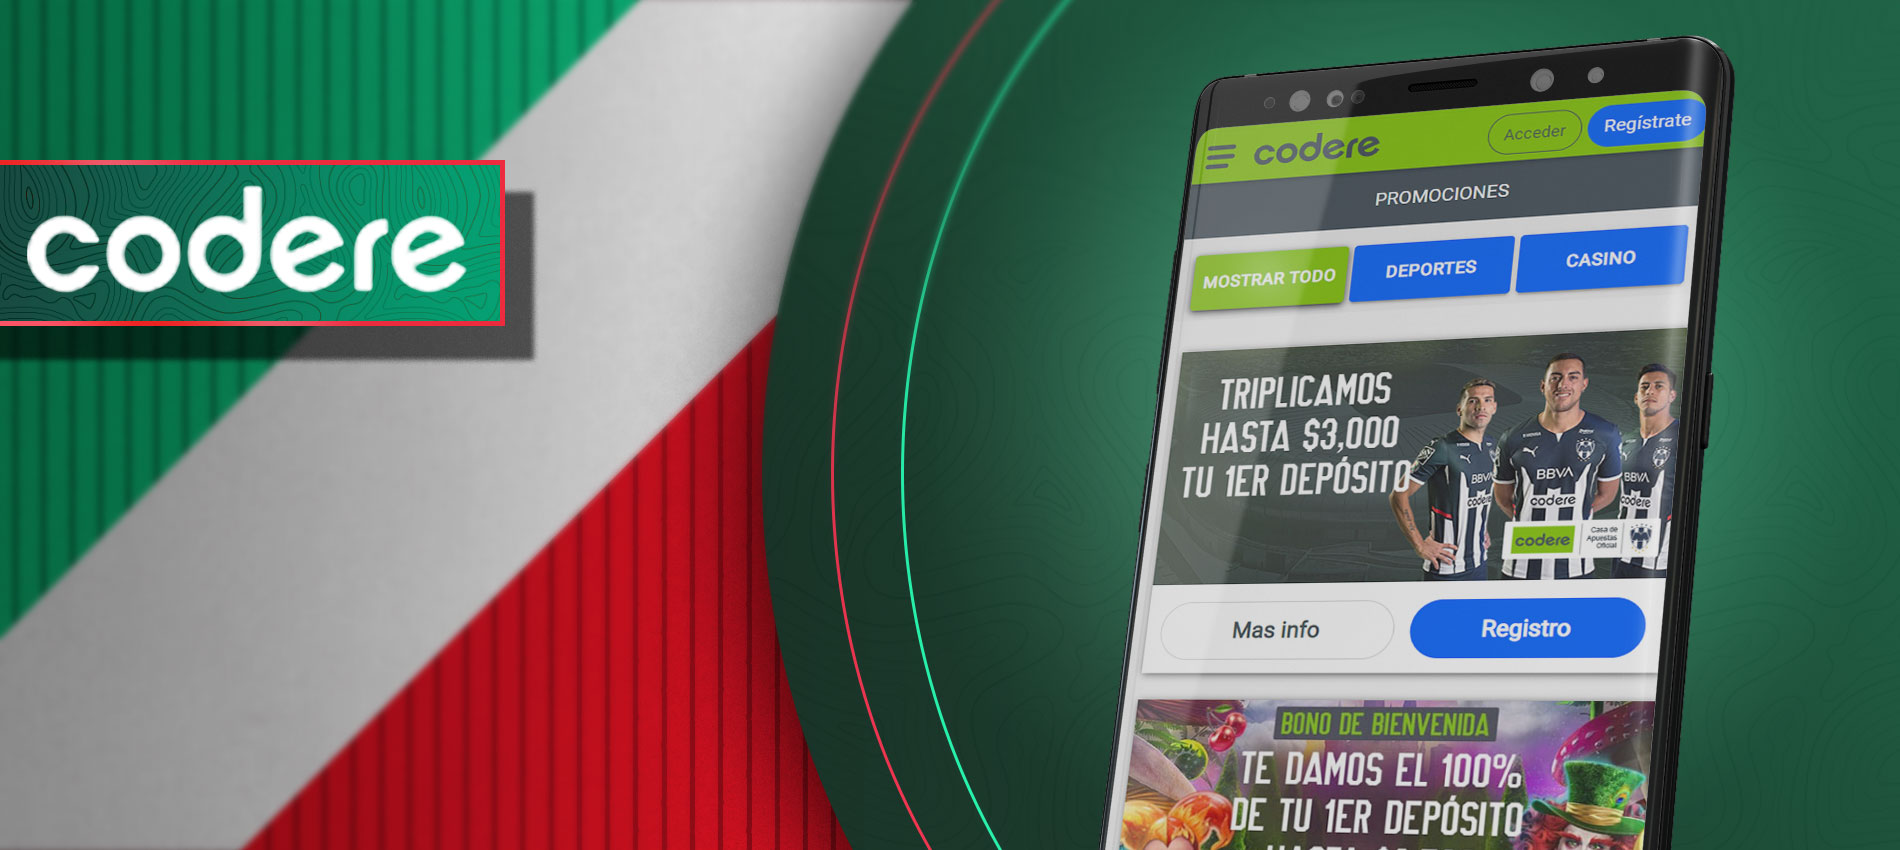 Codere es una de las mejores aplicaciones entre todas las aplicaciones de apuestas mexicanas por la versión appteca.app4citizens.